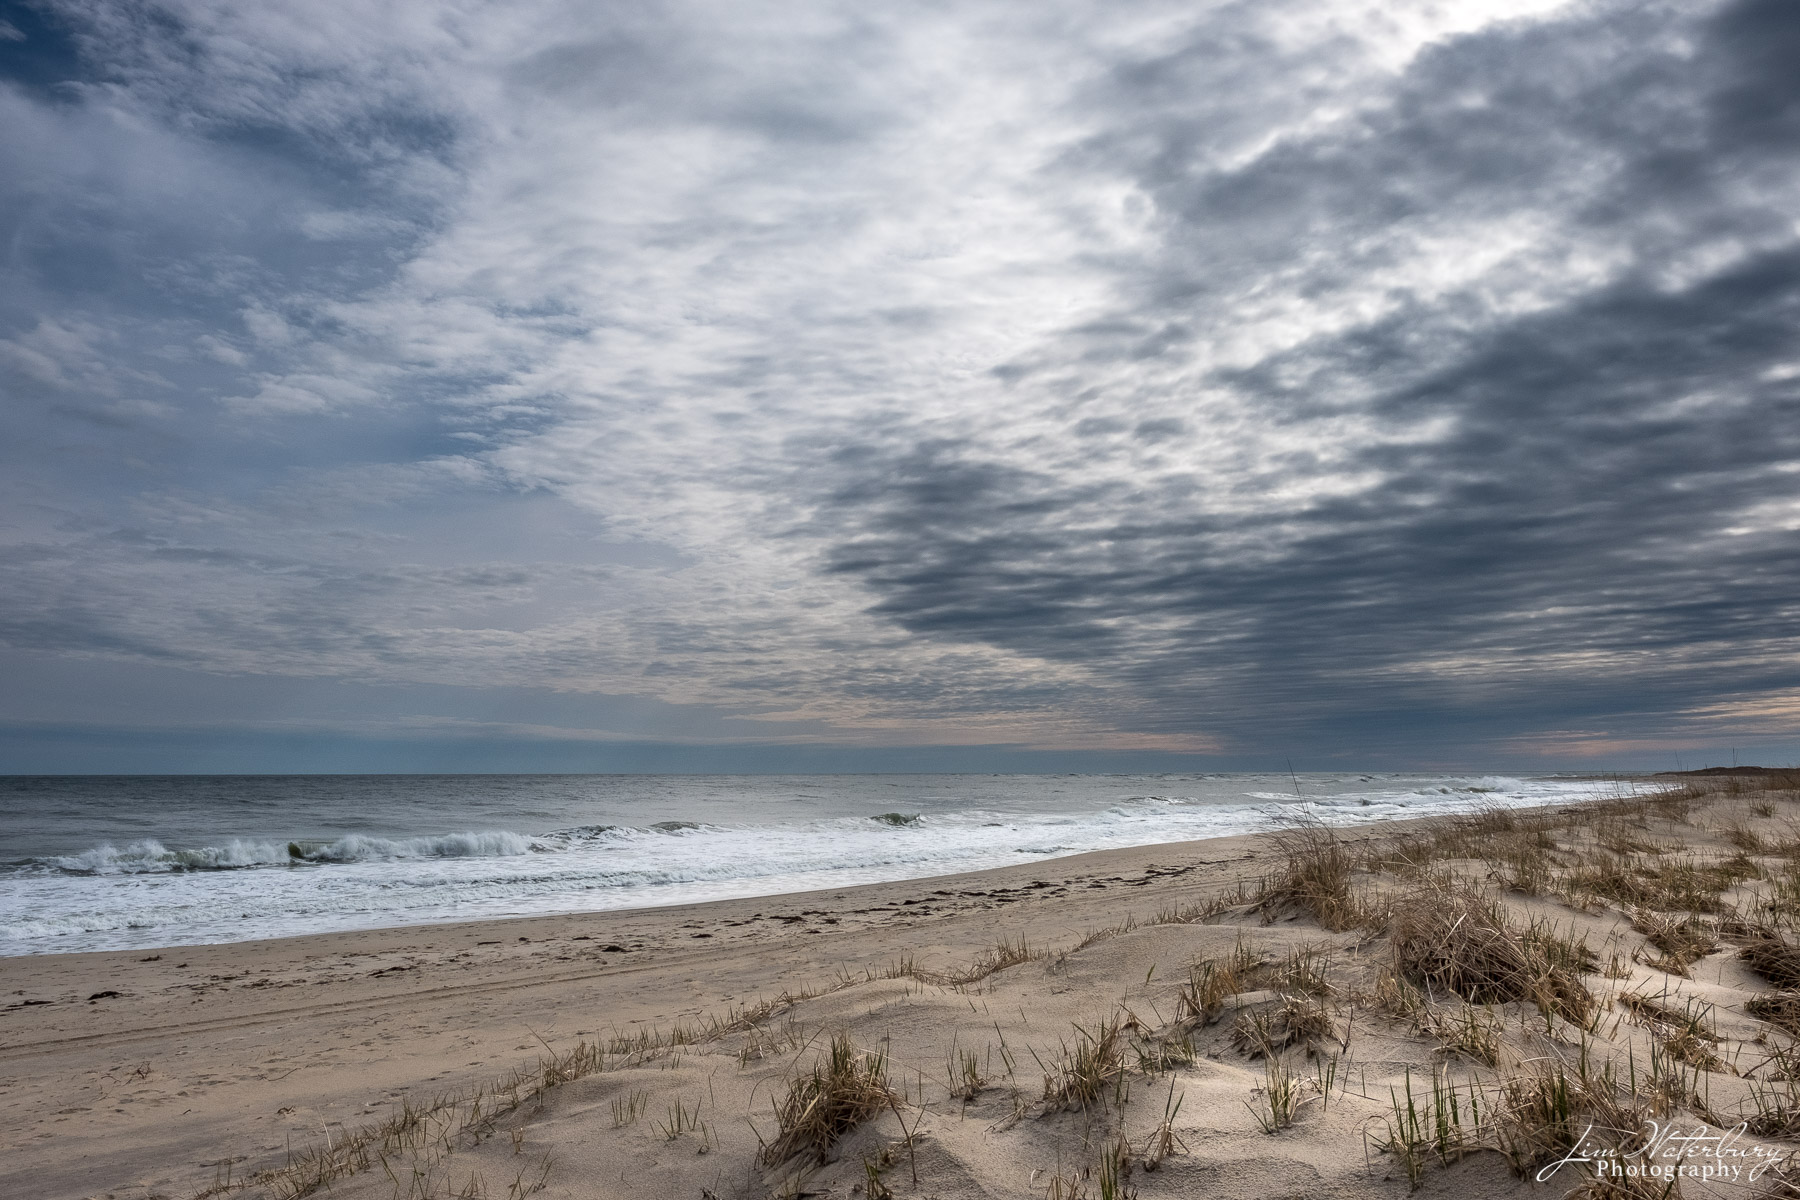 Ocean, beach and cloudy skies in Spring on Nantucket.